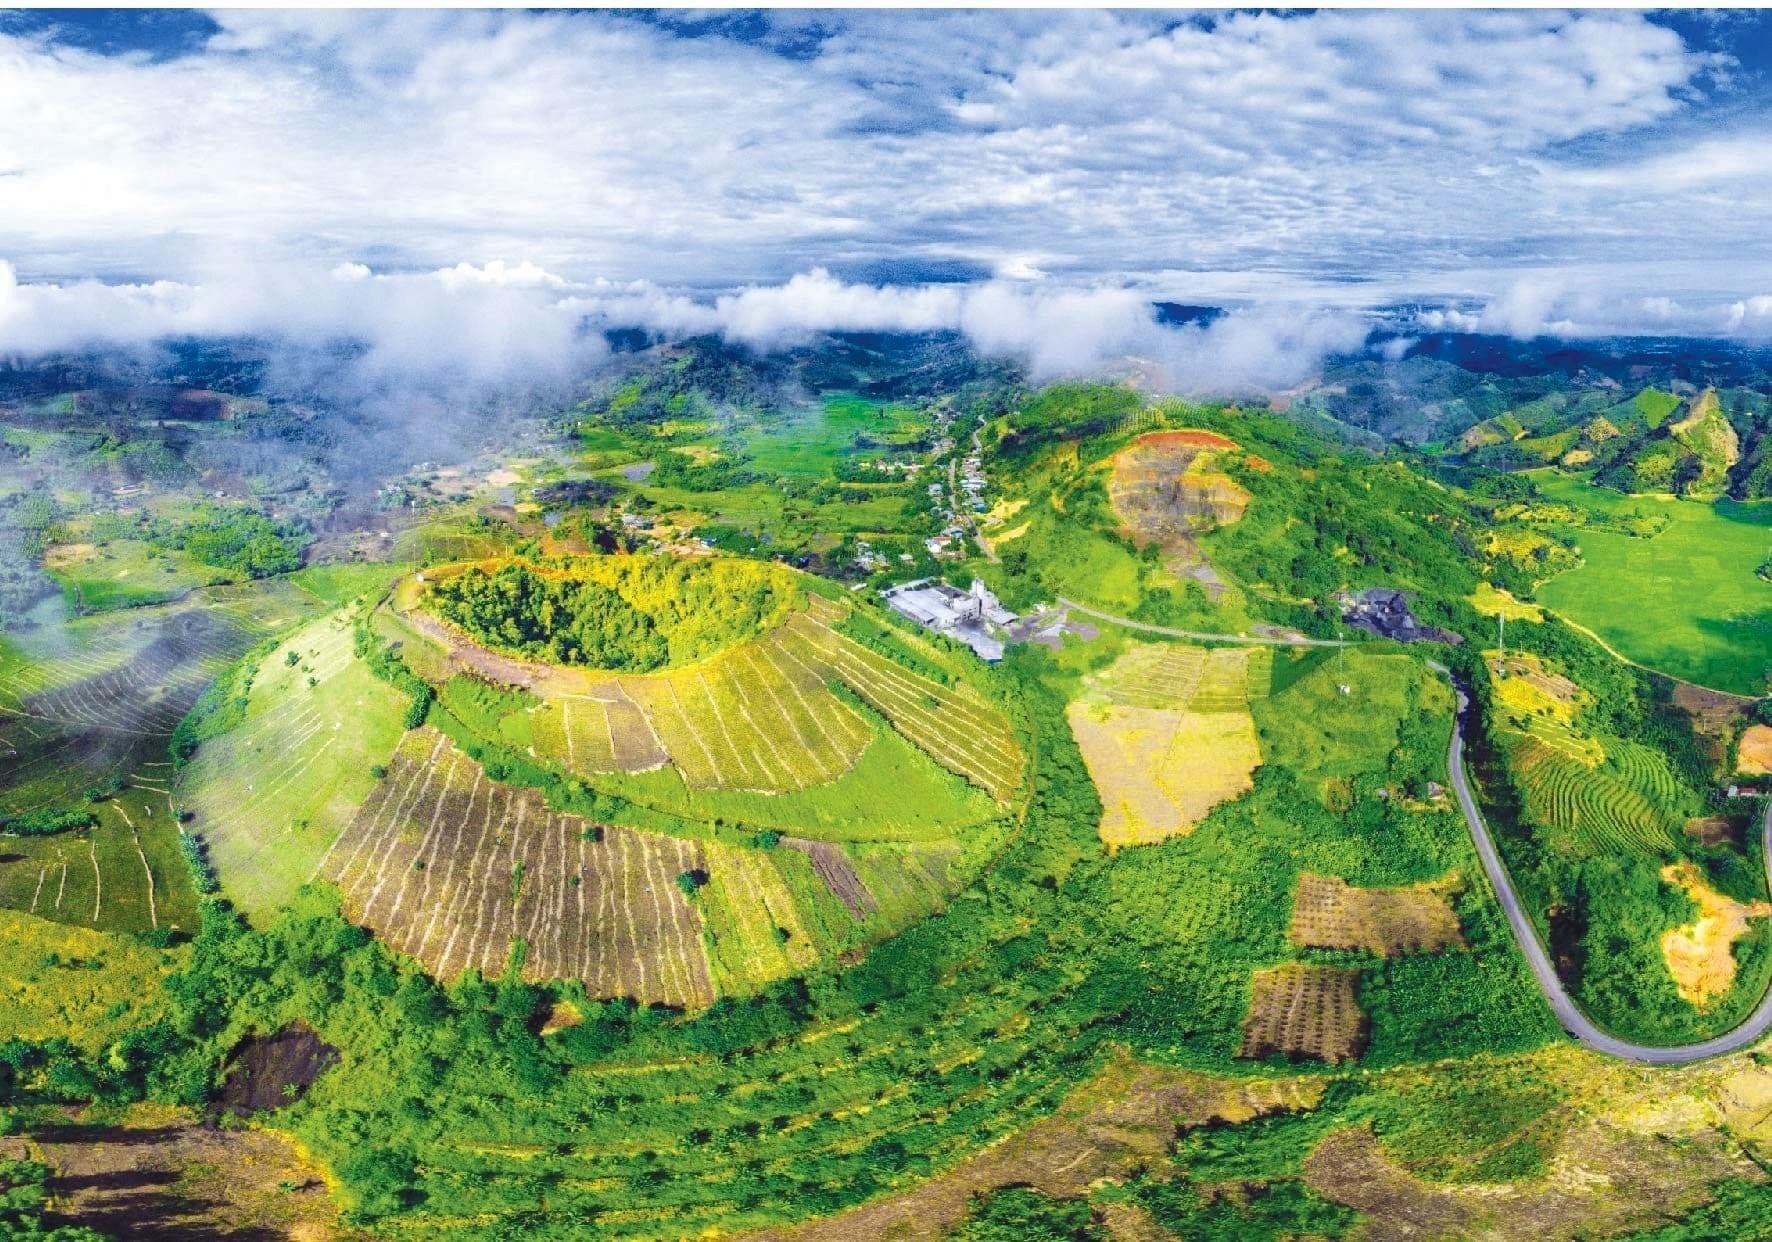 Miệng núi lửa thuộc hệ thống Công viên địa chất UNESCO Đắk Nông. Ảnh: Ban Quản lý Công viên địa chất